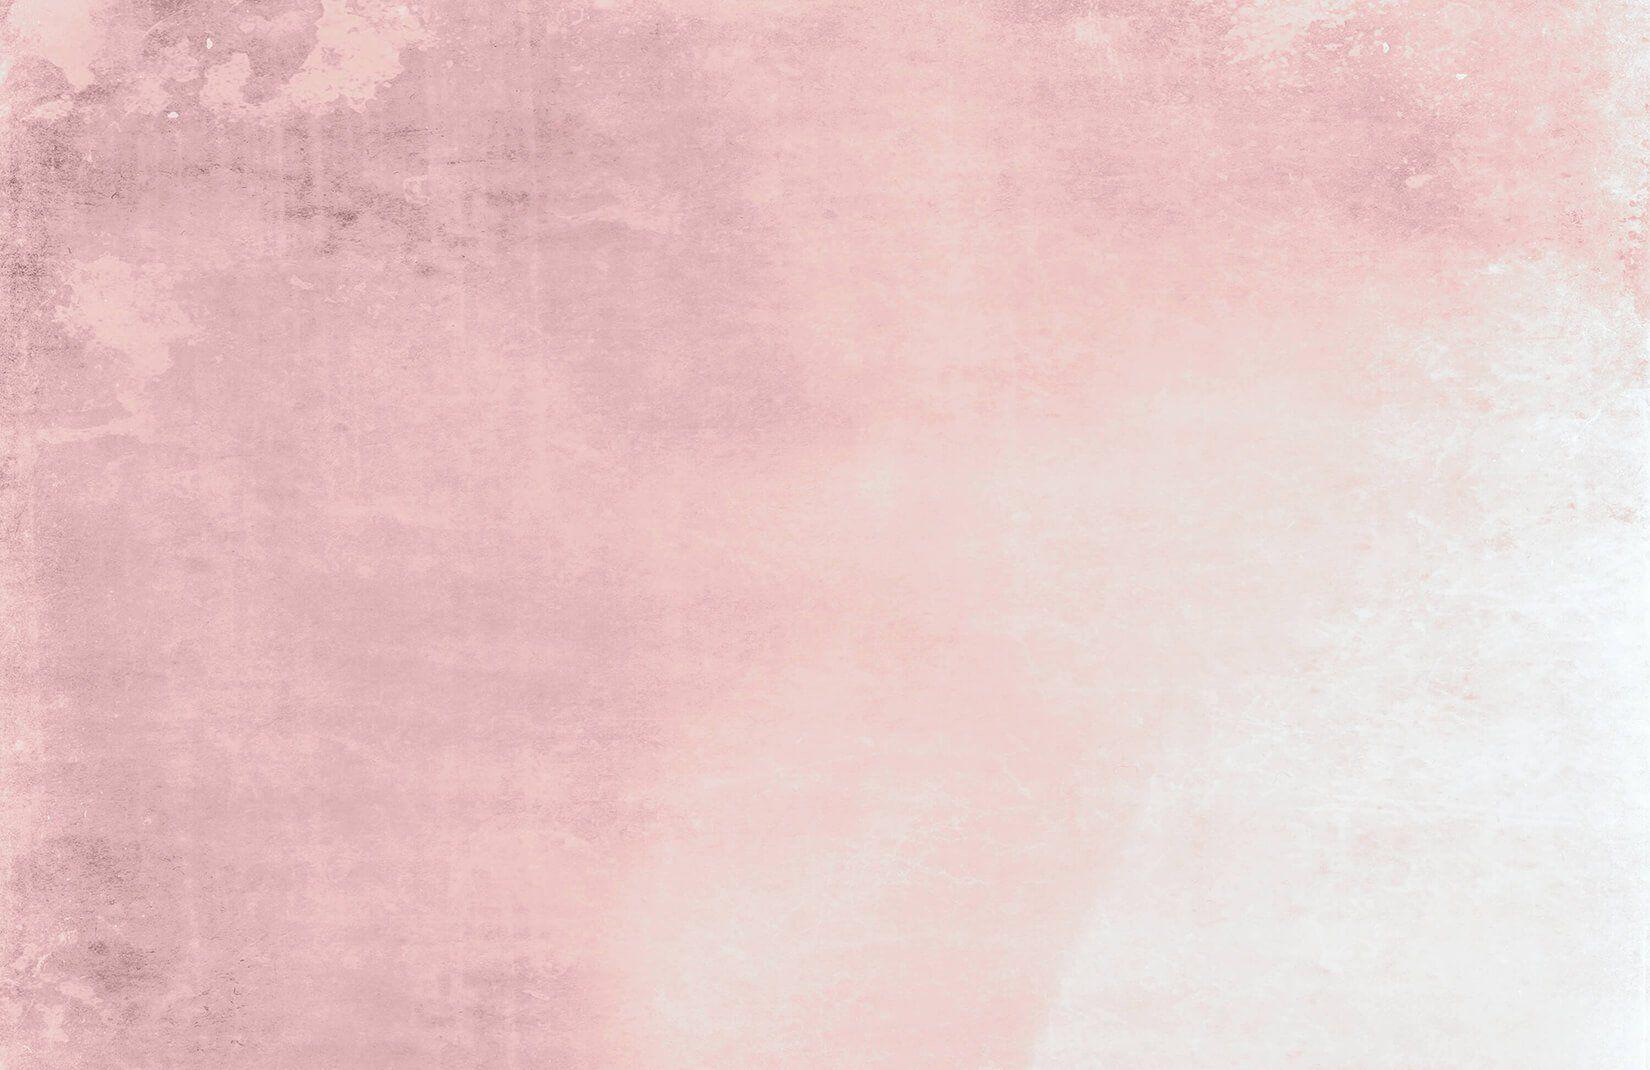 Dusty Pink Wallpapers - Top Hình Ảnh Đẹp